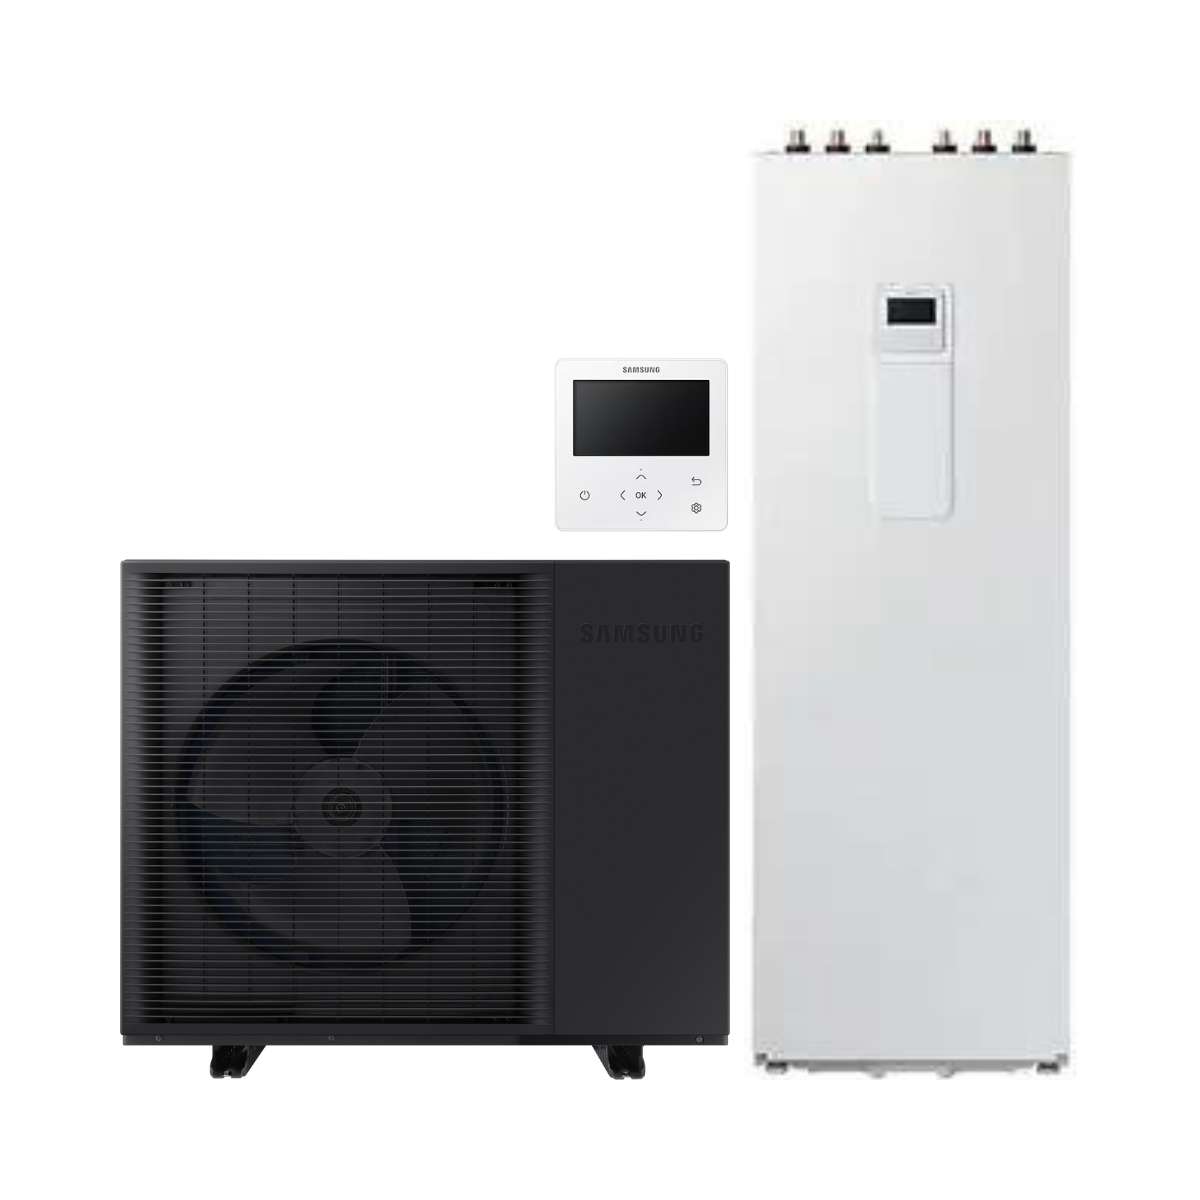 Pompa di calore monoblocco Samsung EHS HT 12 kW + ClimateHub da 200 litri con riferimento KITSAMEHSHT12+200 del marchio SAMSUNG